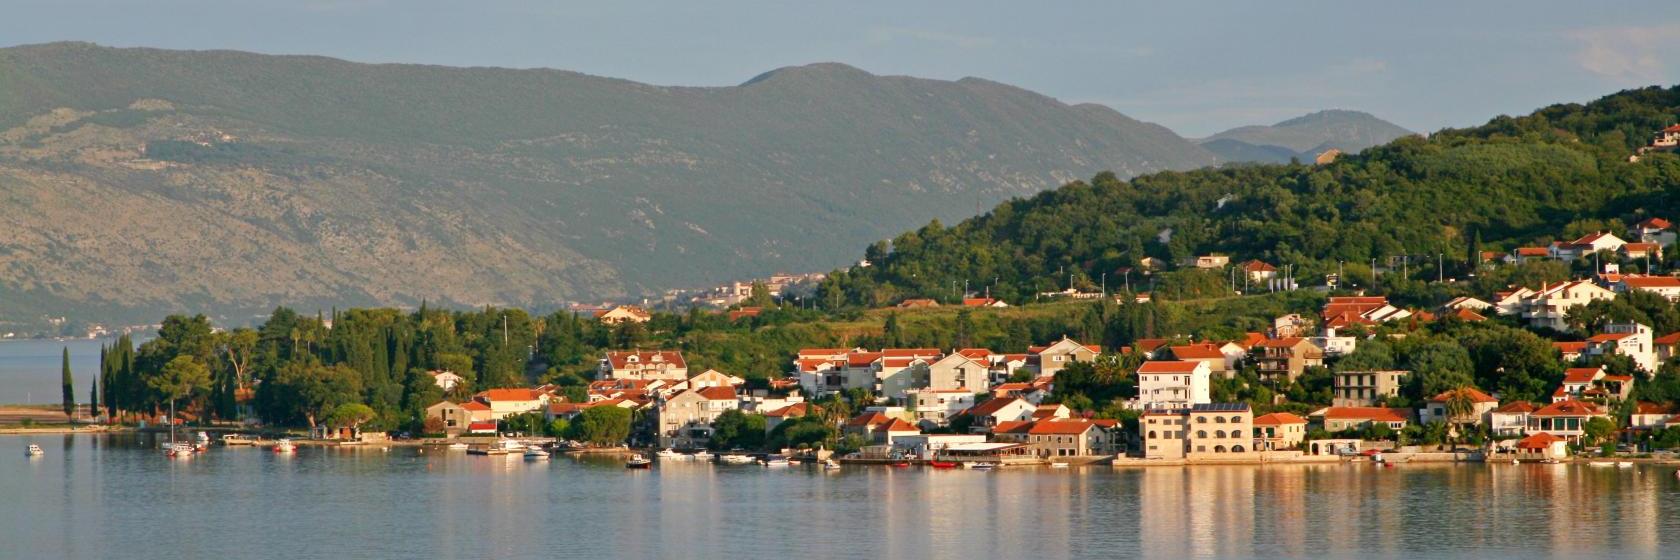 Дженовичи черногория отзывы купить квартиру в эстонии